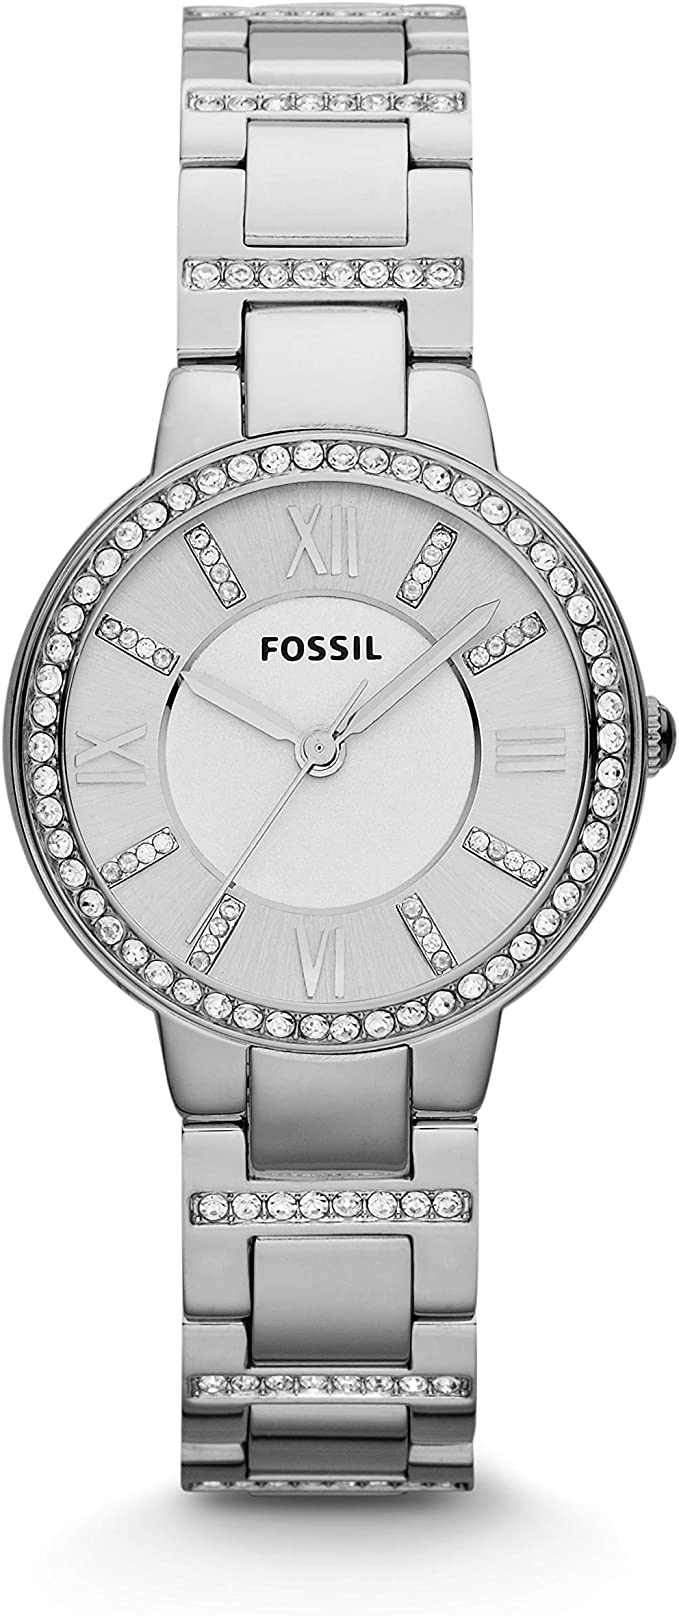 Fossil Women's Virginia Quartz Stainless Steel Dress Watch